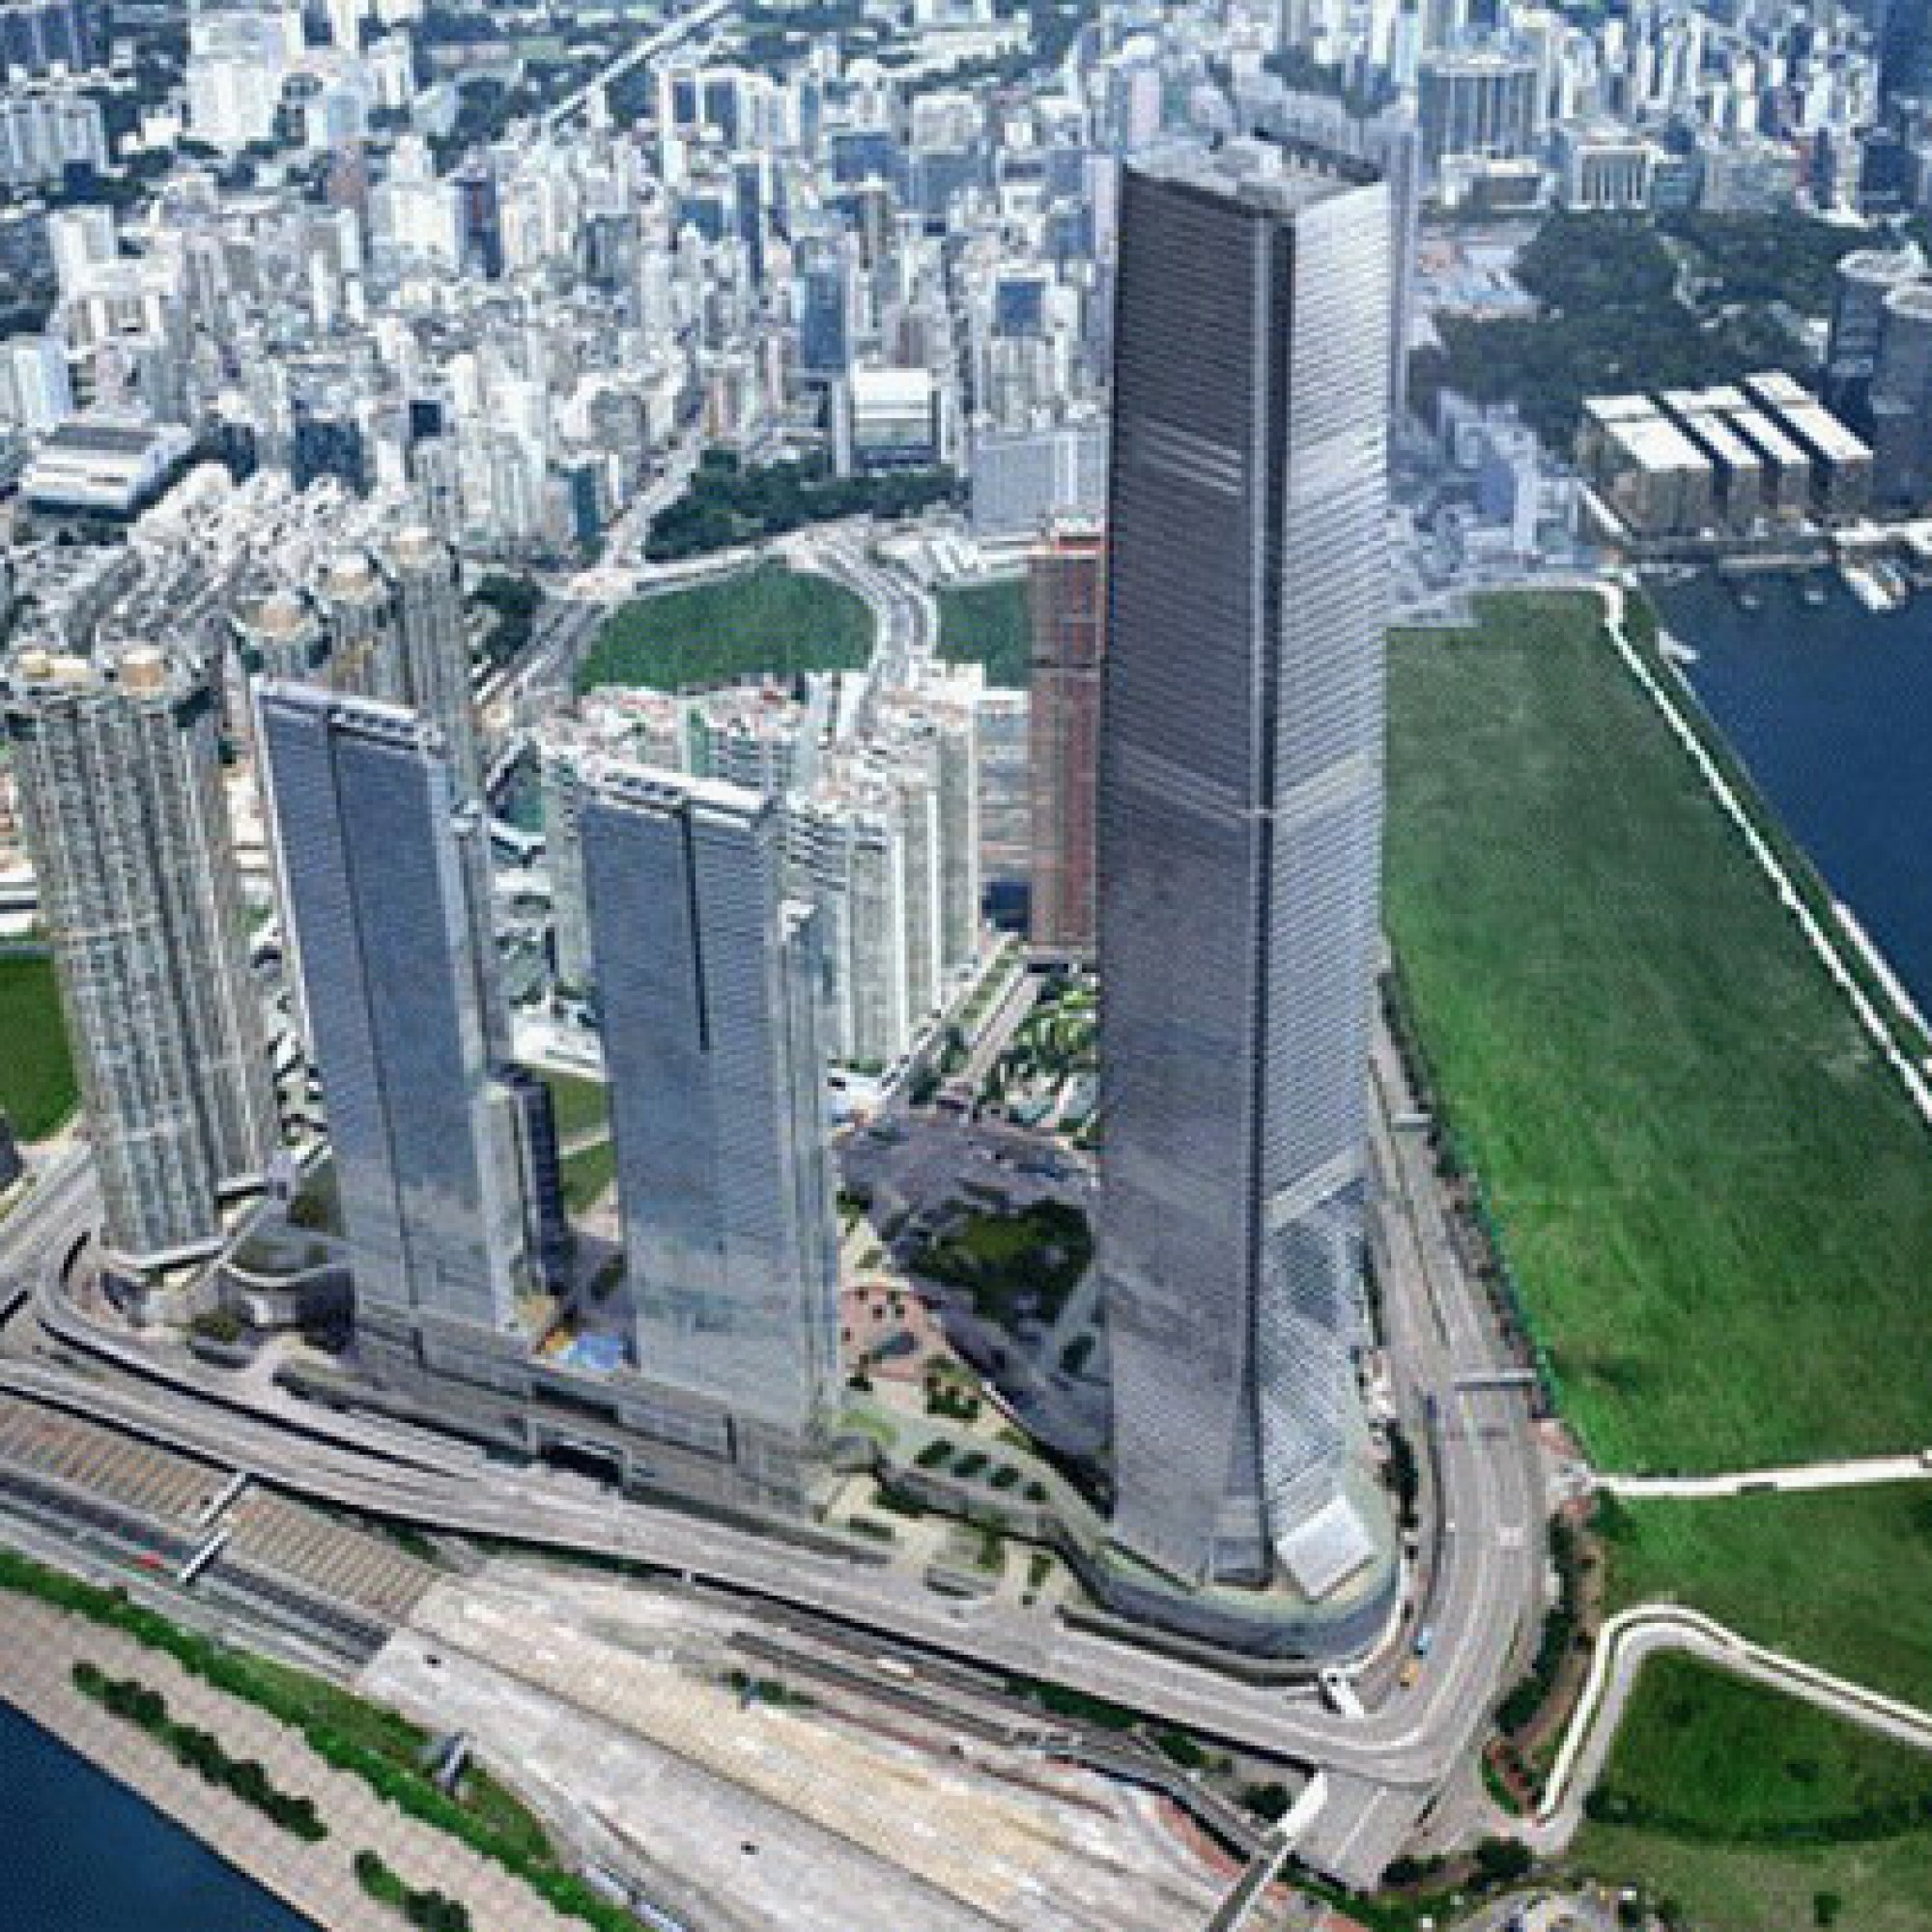 484 Meter ist das International Commerce Centre hoch.